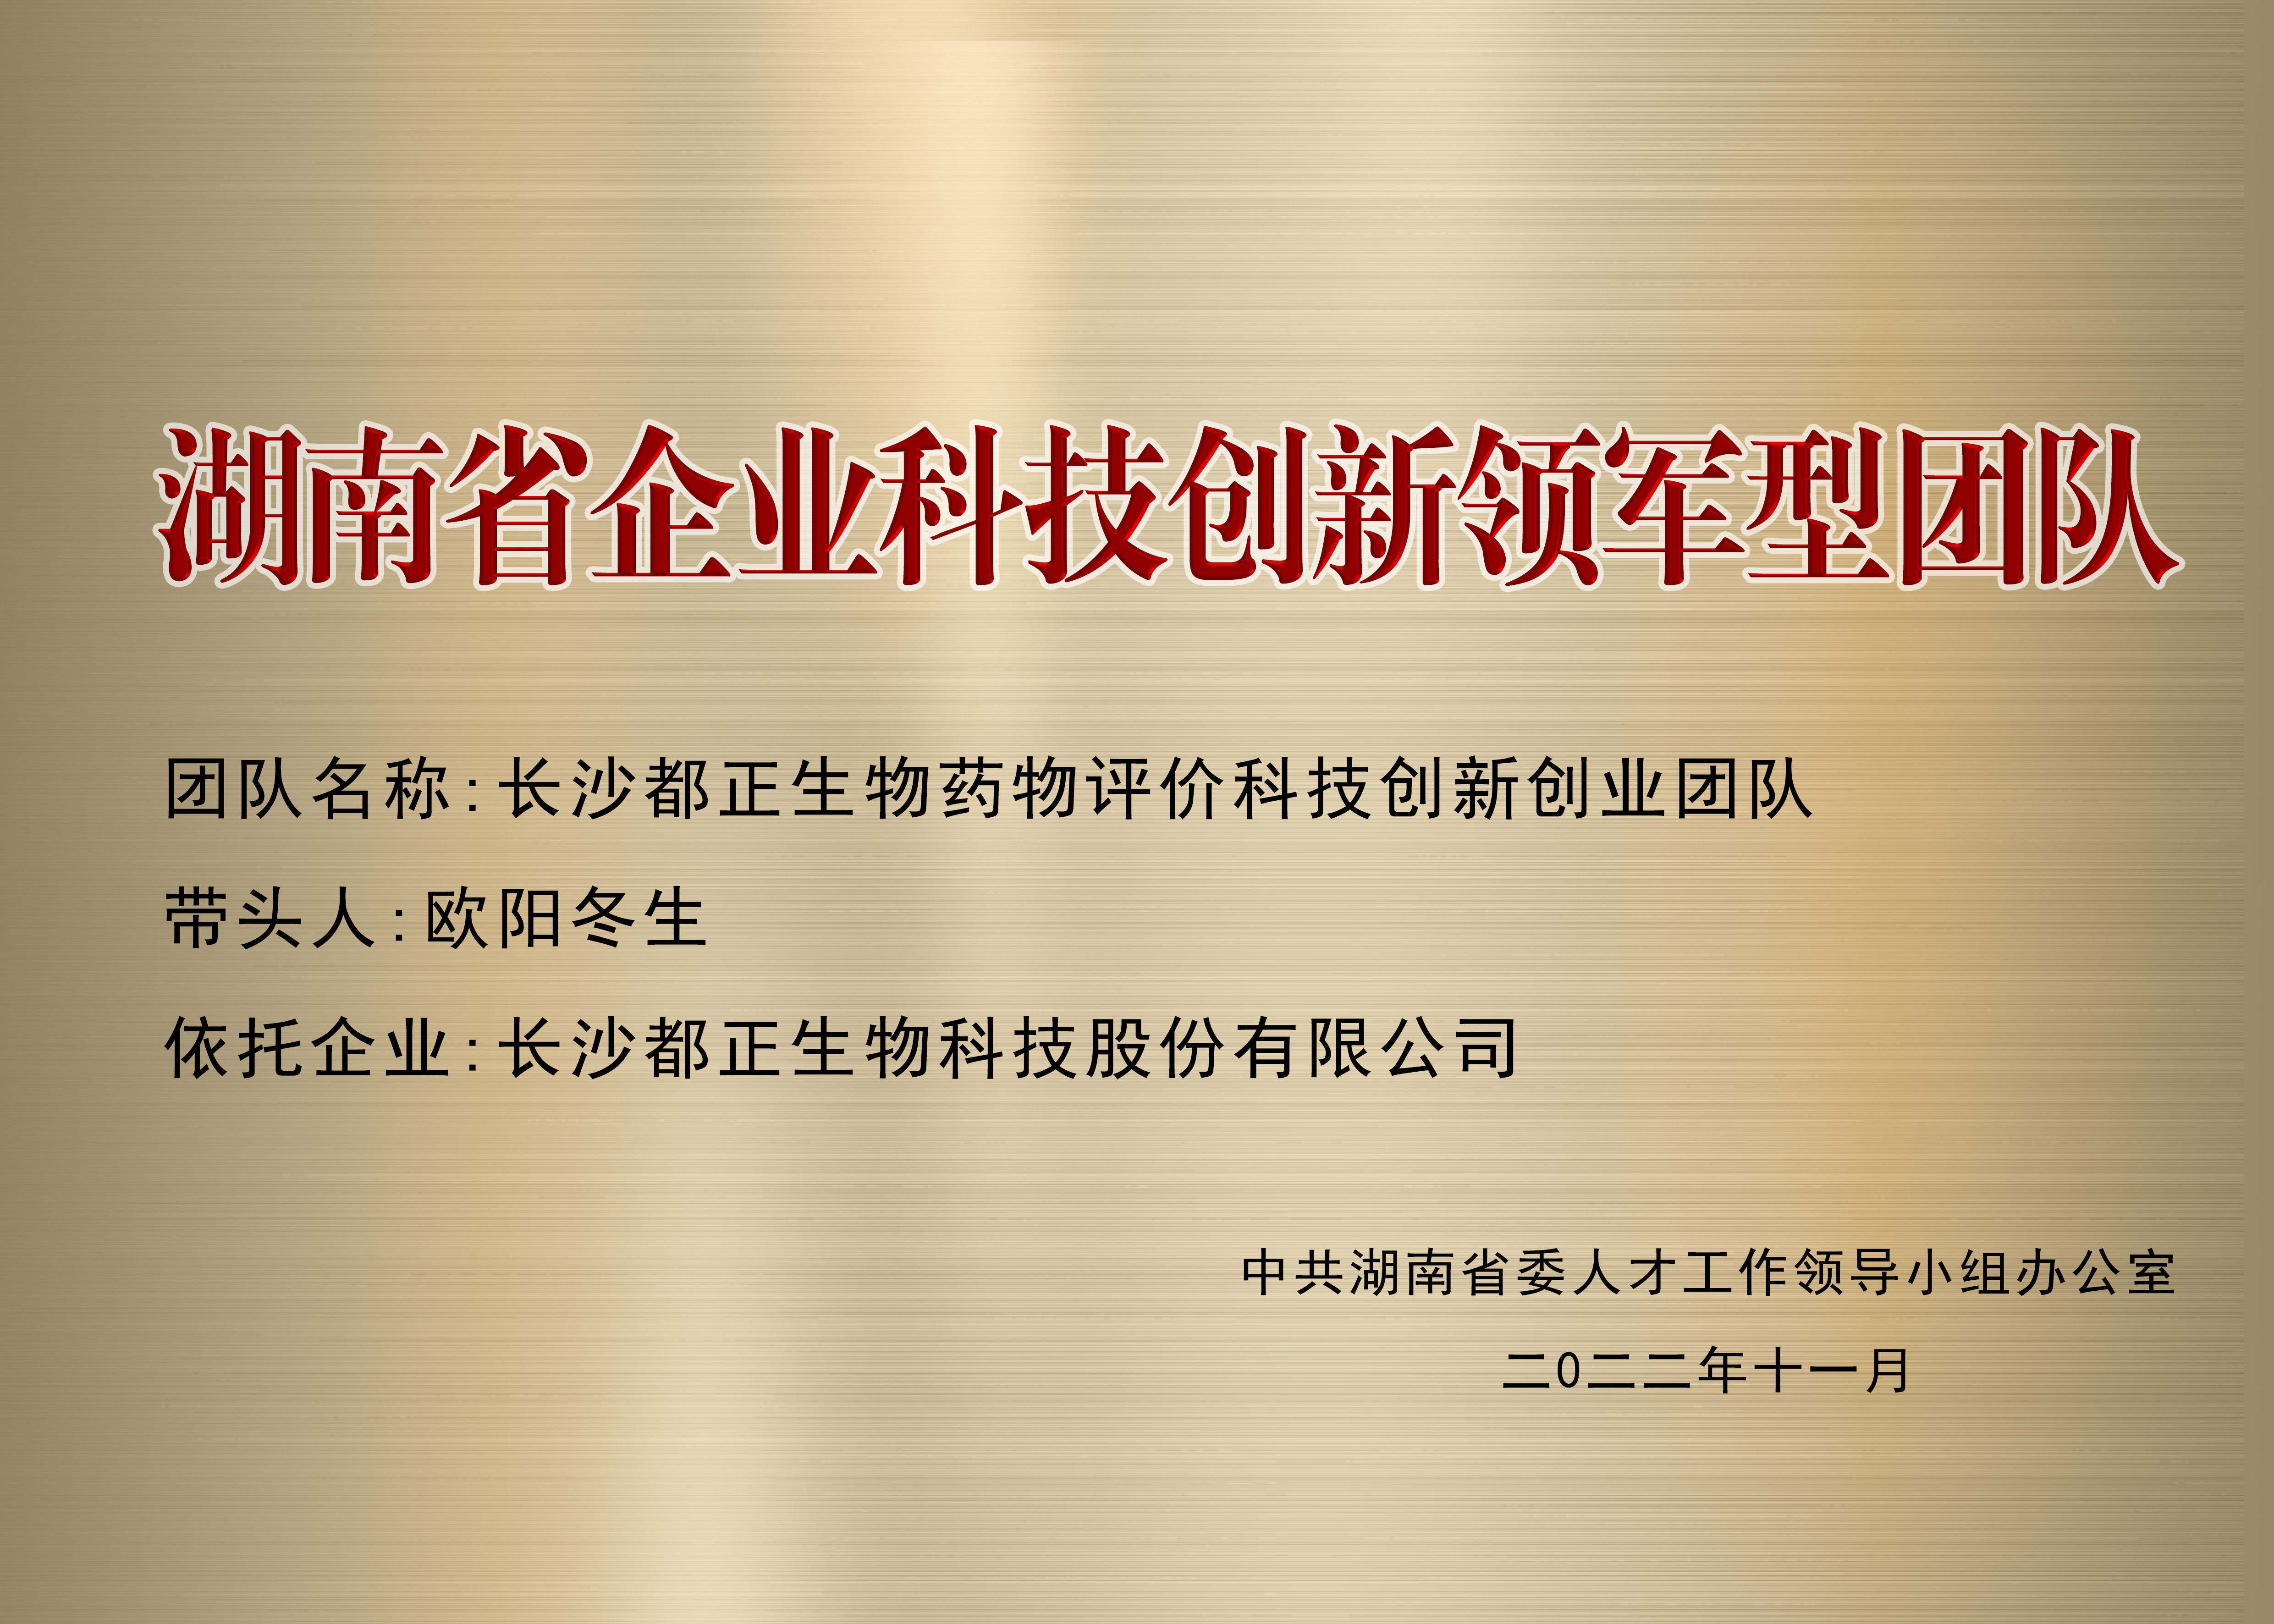 2022年 湖南省企业科技创新领军型团队